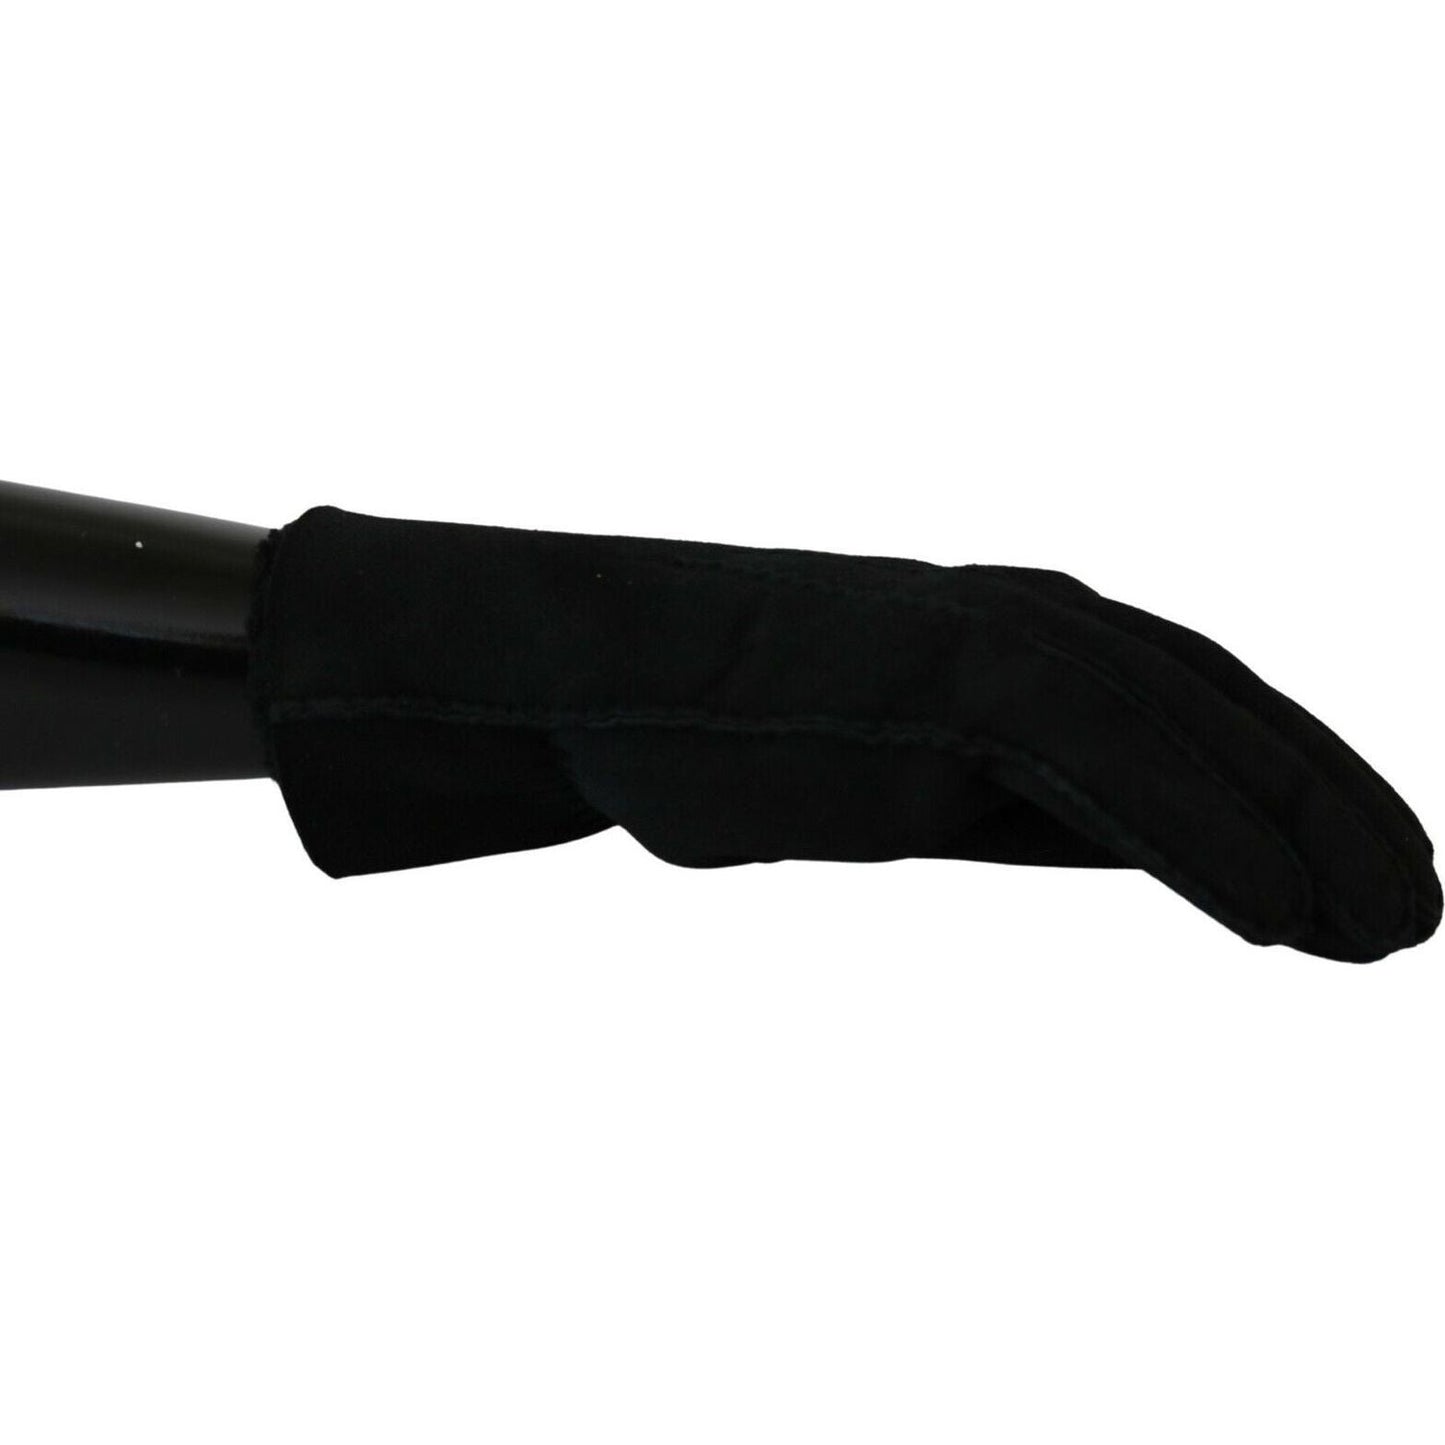 Elegant Black Leather Biker Gloves